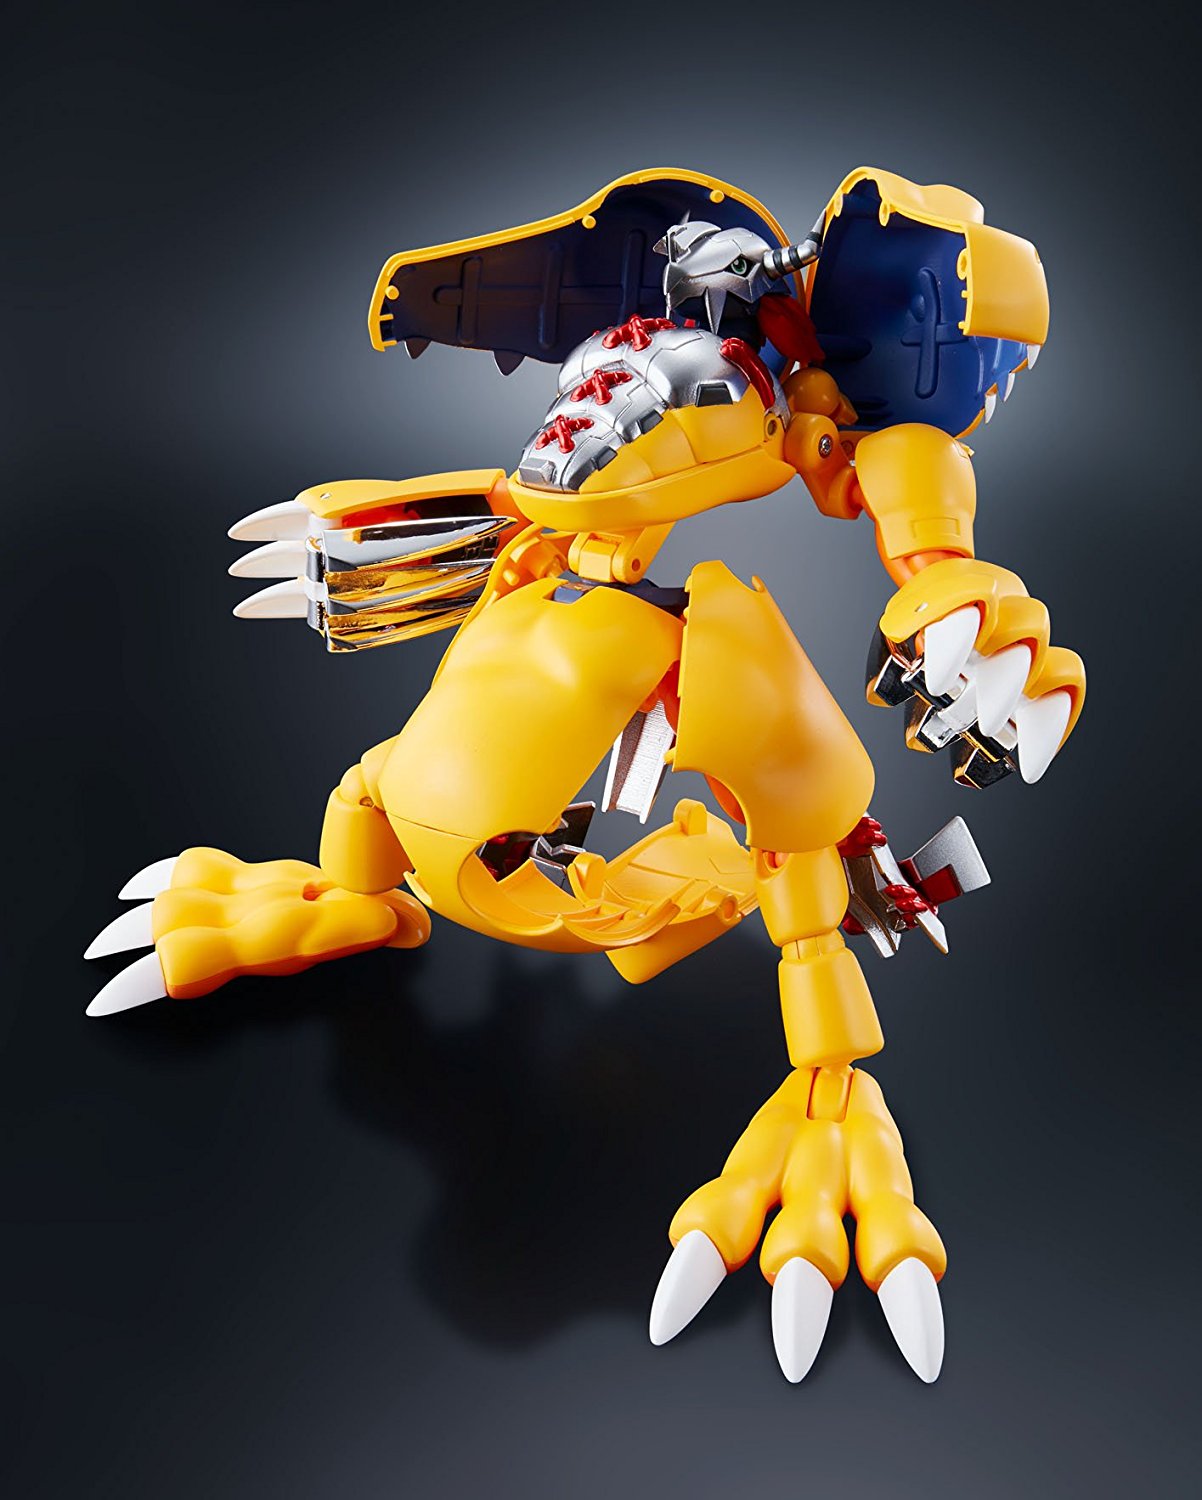 Digimon Brasil - Razielmon Um digimon anjo IGUAL A OPHANIMON